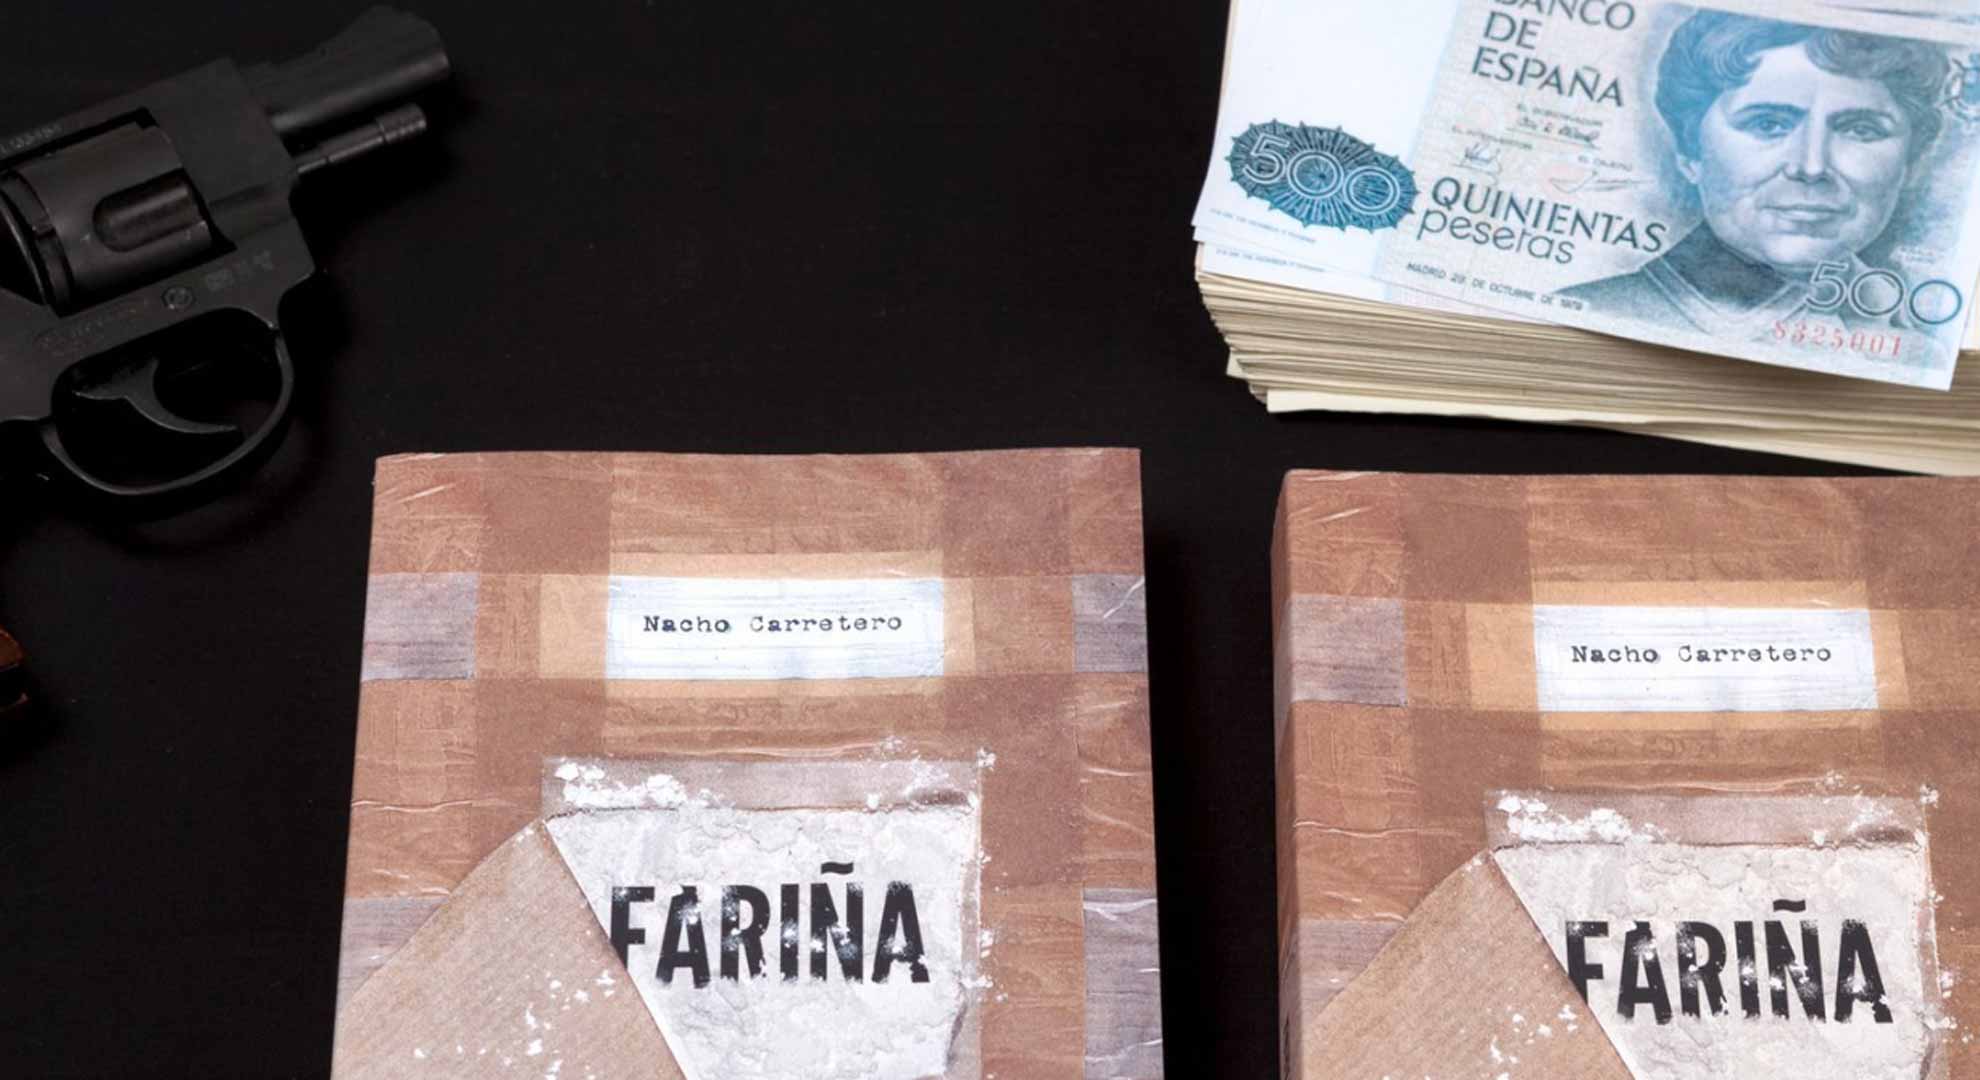 La Audiencia Provincial de Madrid levanta secuestro del libro 'Fariña'